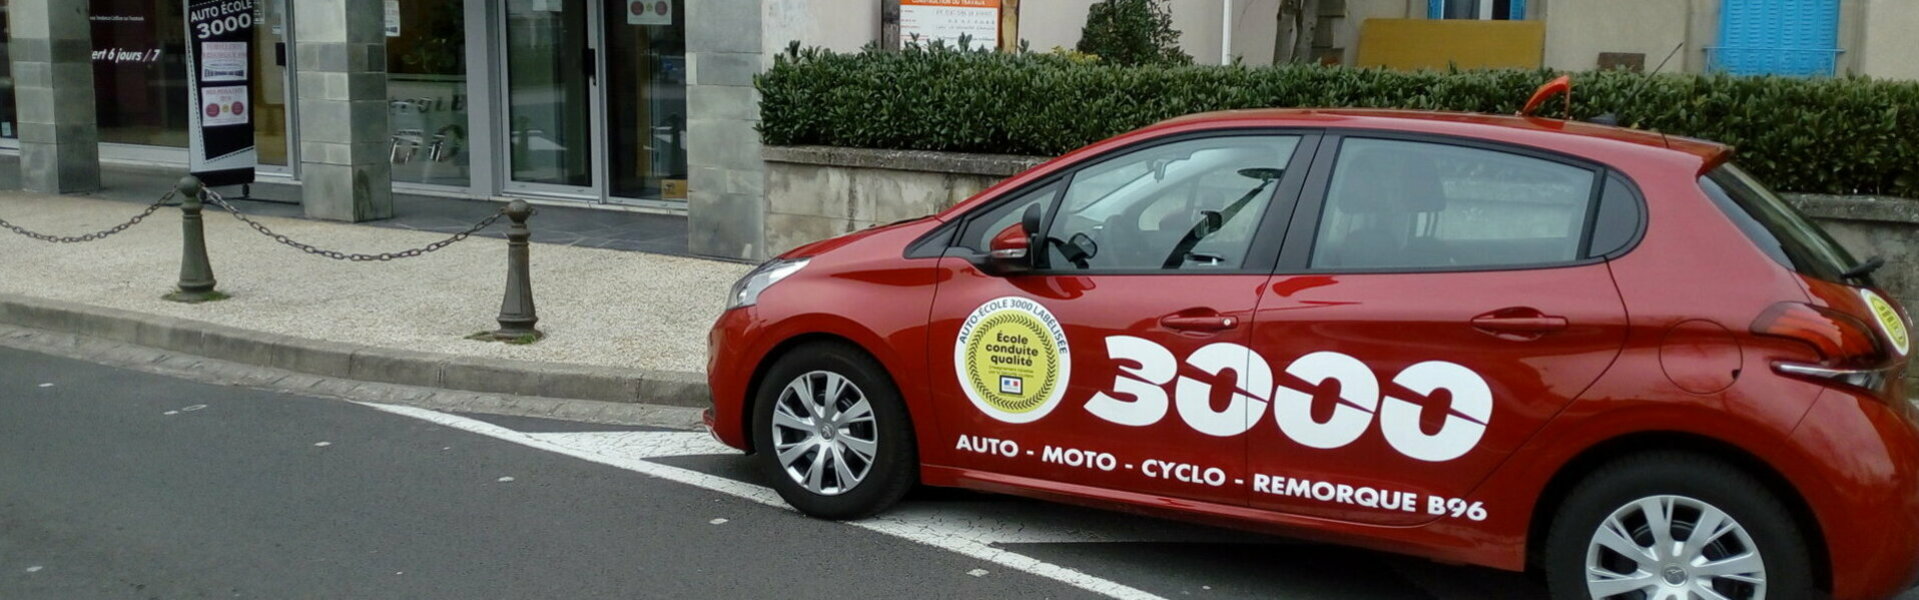 Permis auto à Aurillac avec Auto-Ecole 3000